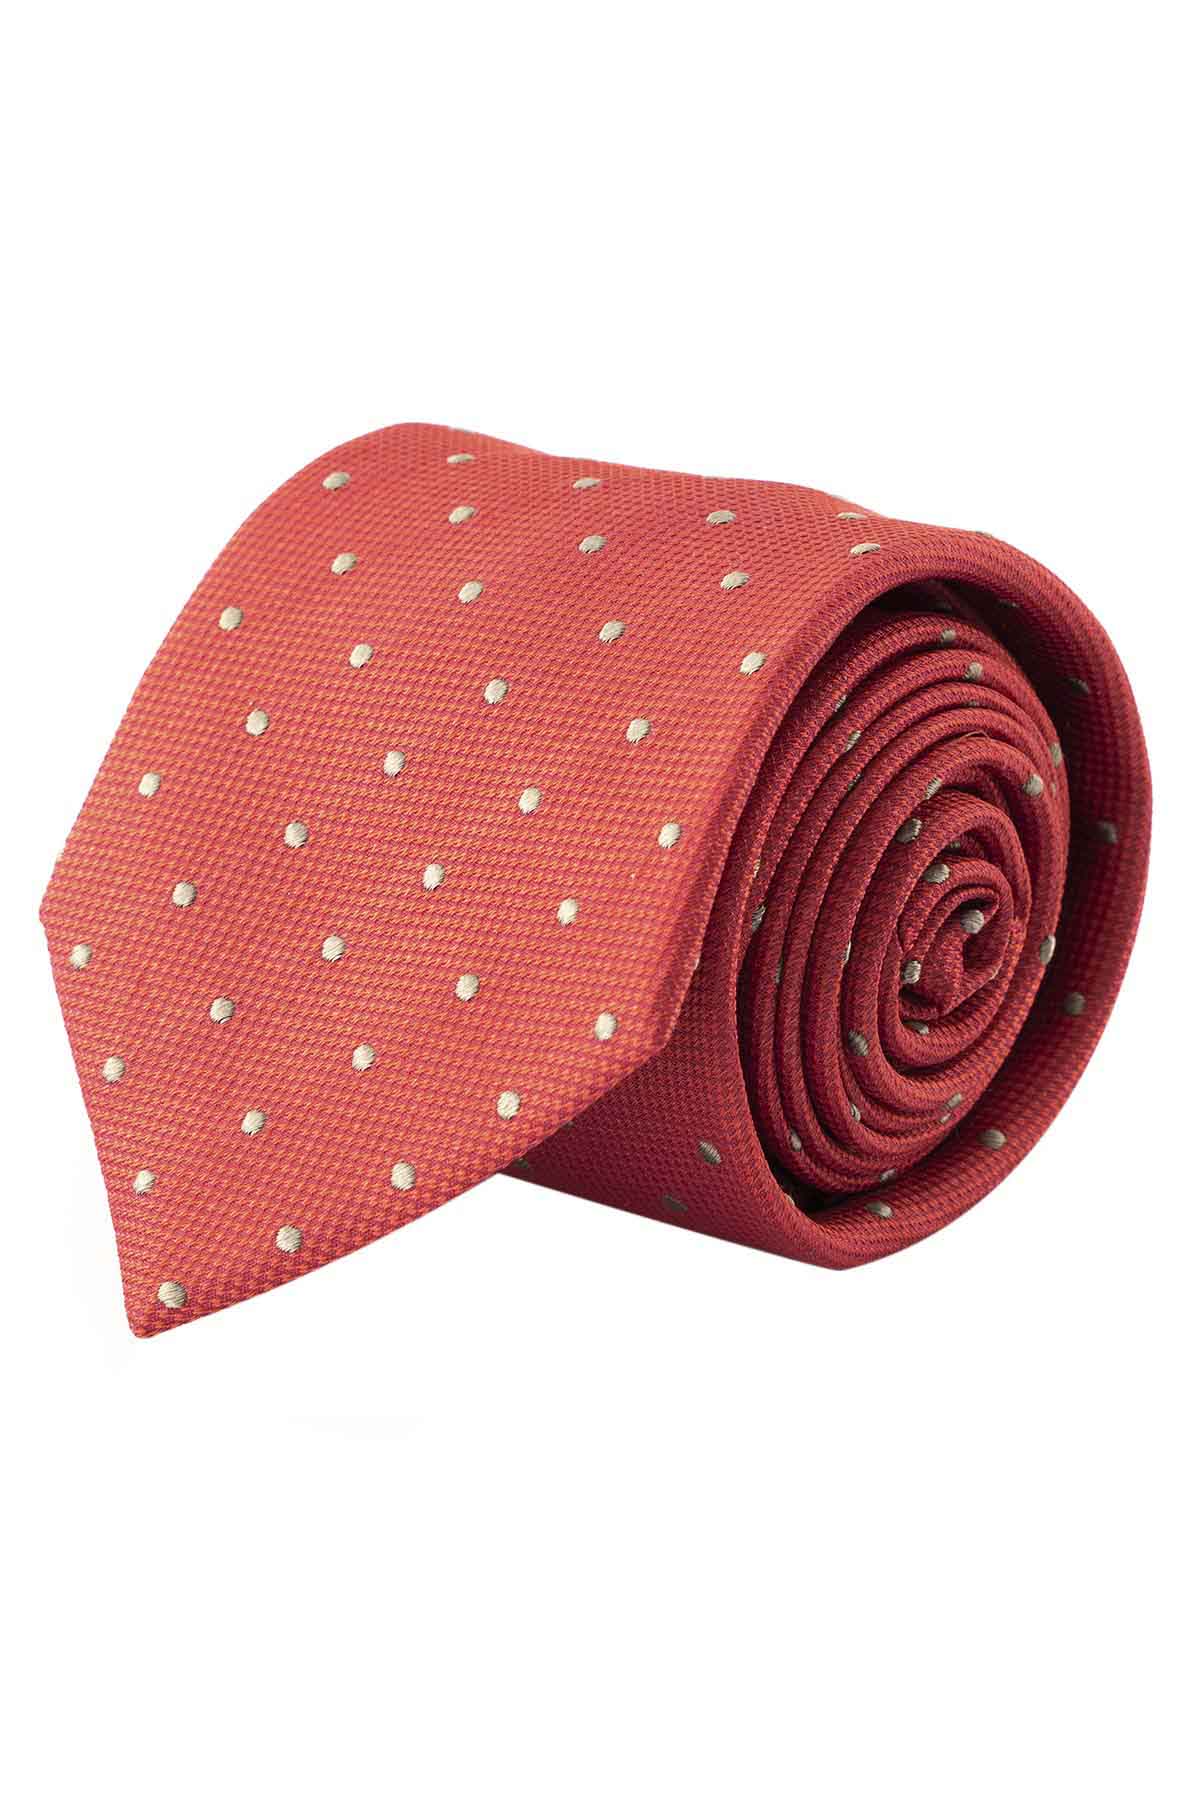 Corbata Calderoni Color Rojo Cereza